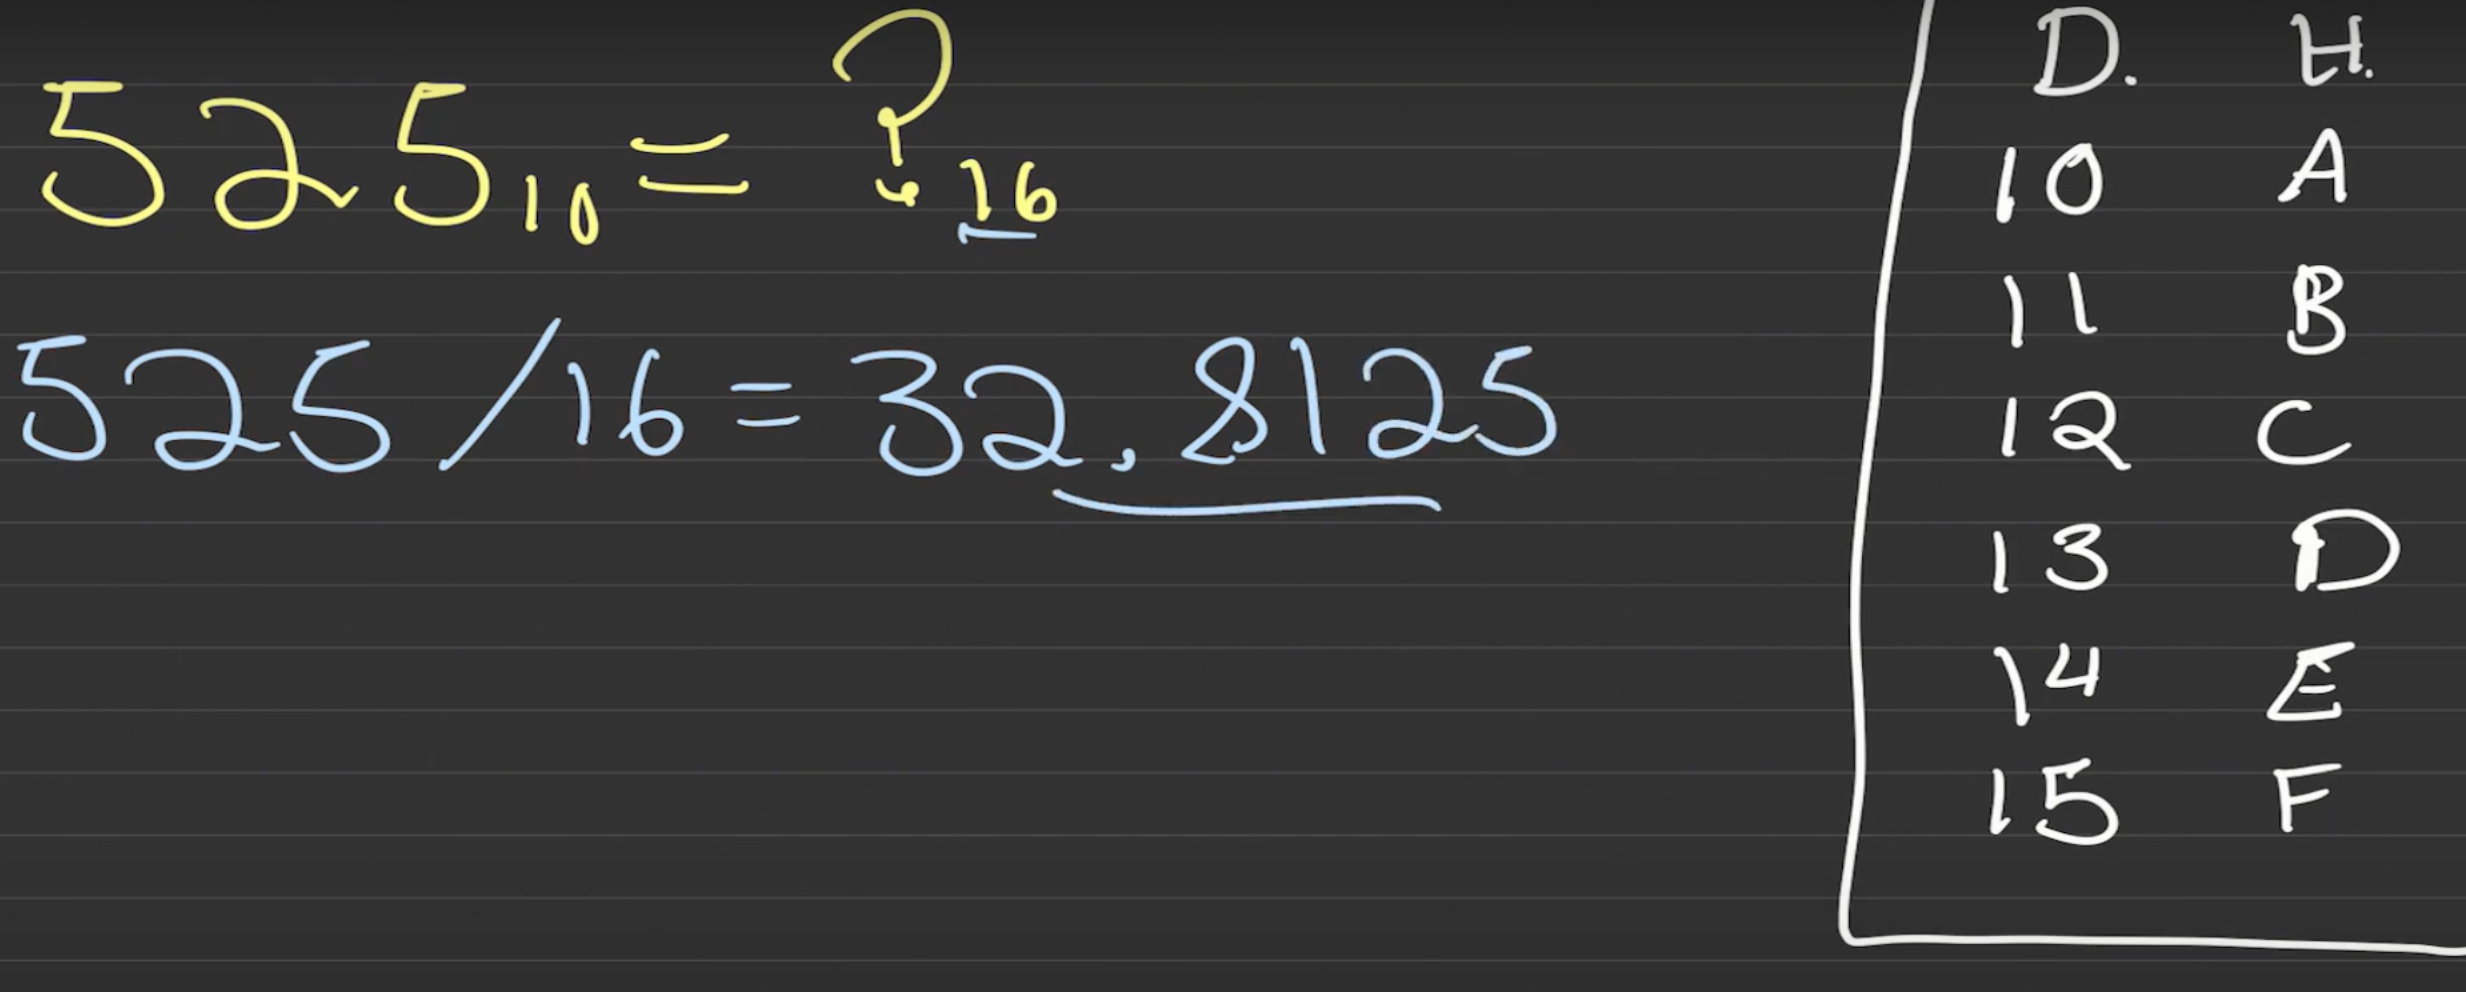 Cómo pasar de decimal a hexadecimal desde cero